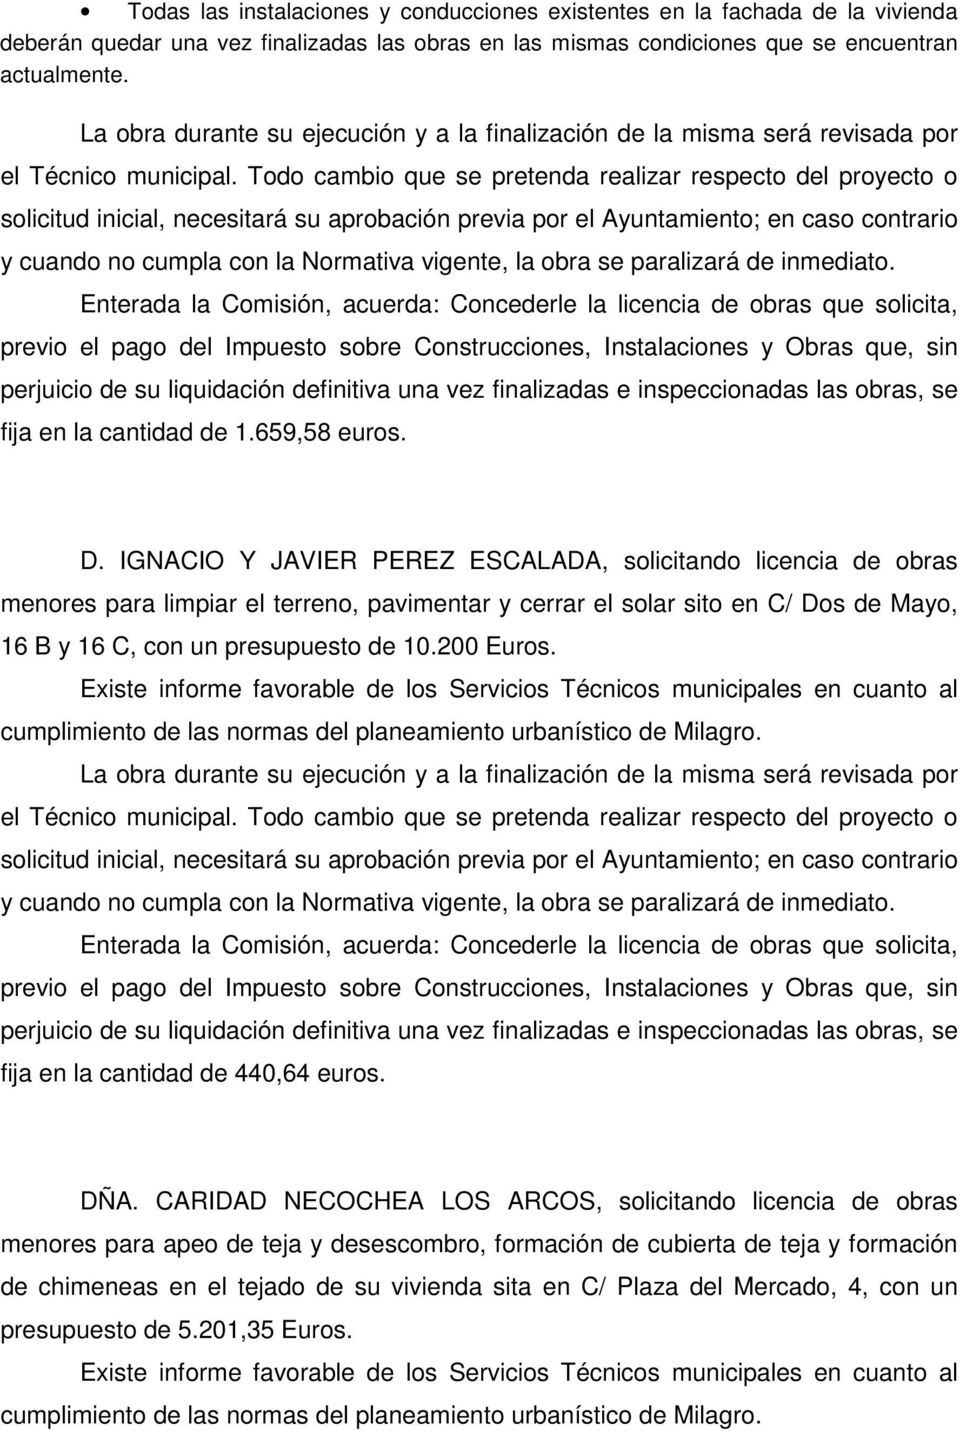 IGNACIO Y JAVIER PEREZ ESCALADA, solicitando licencia de obras menores para limpiar el terreno, pavimentar y cerrar el solar sito en C/ Dos de Mayo, 16 B y 16 C, con un